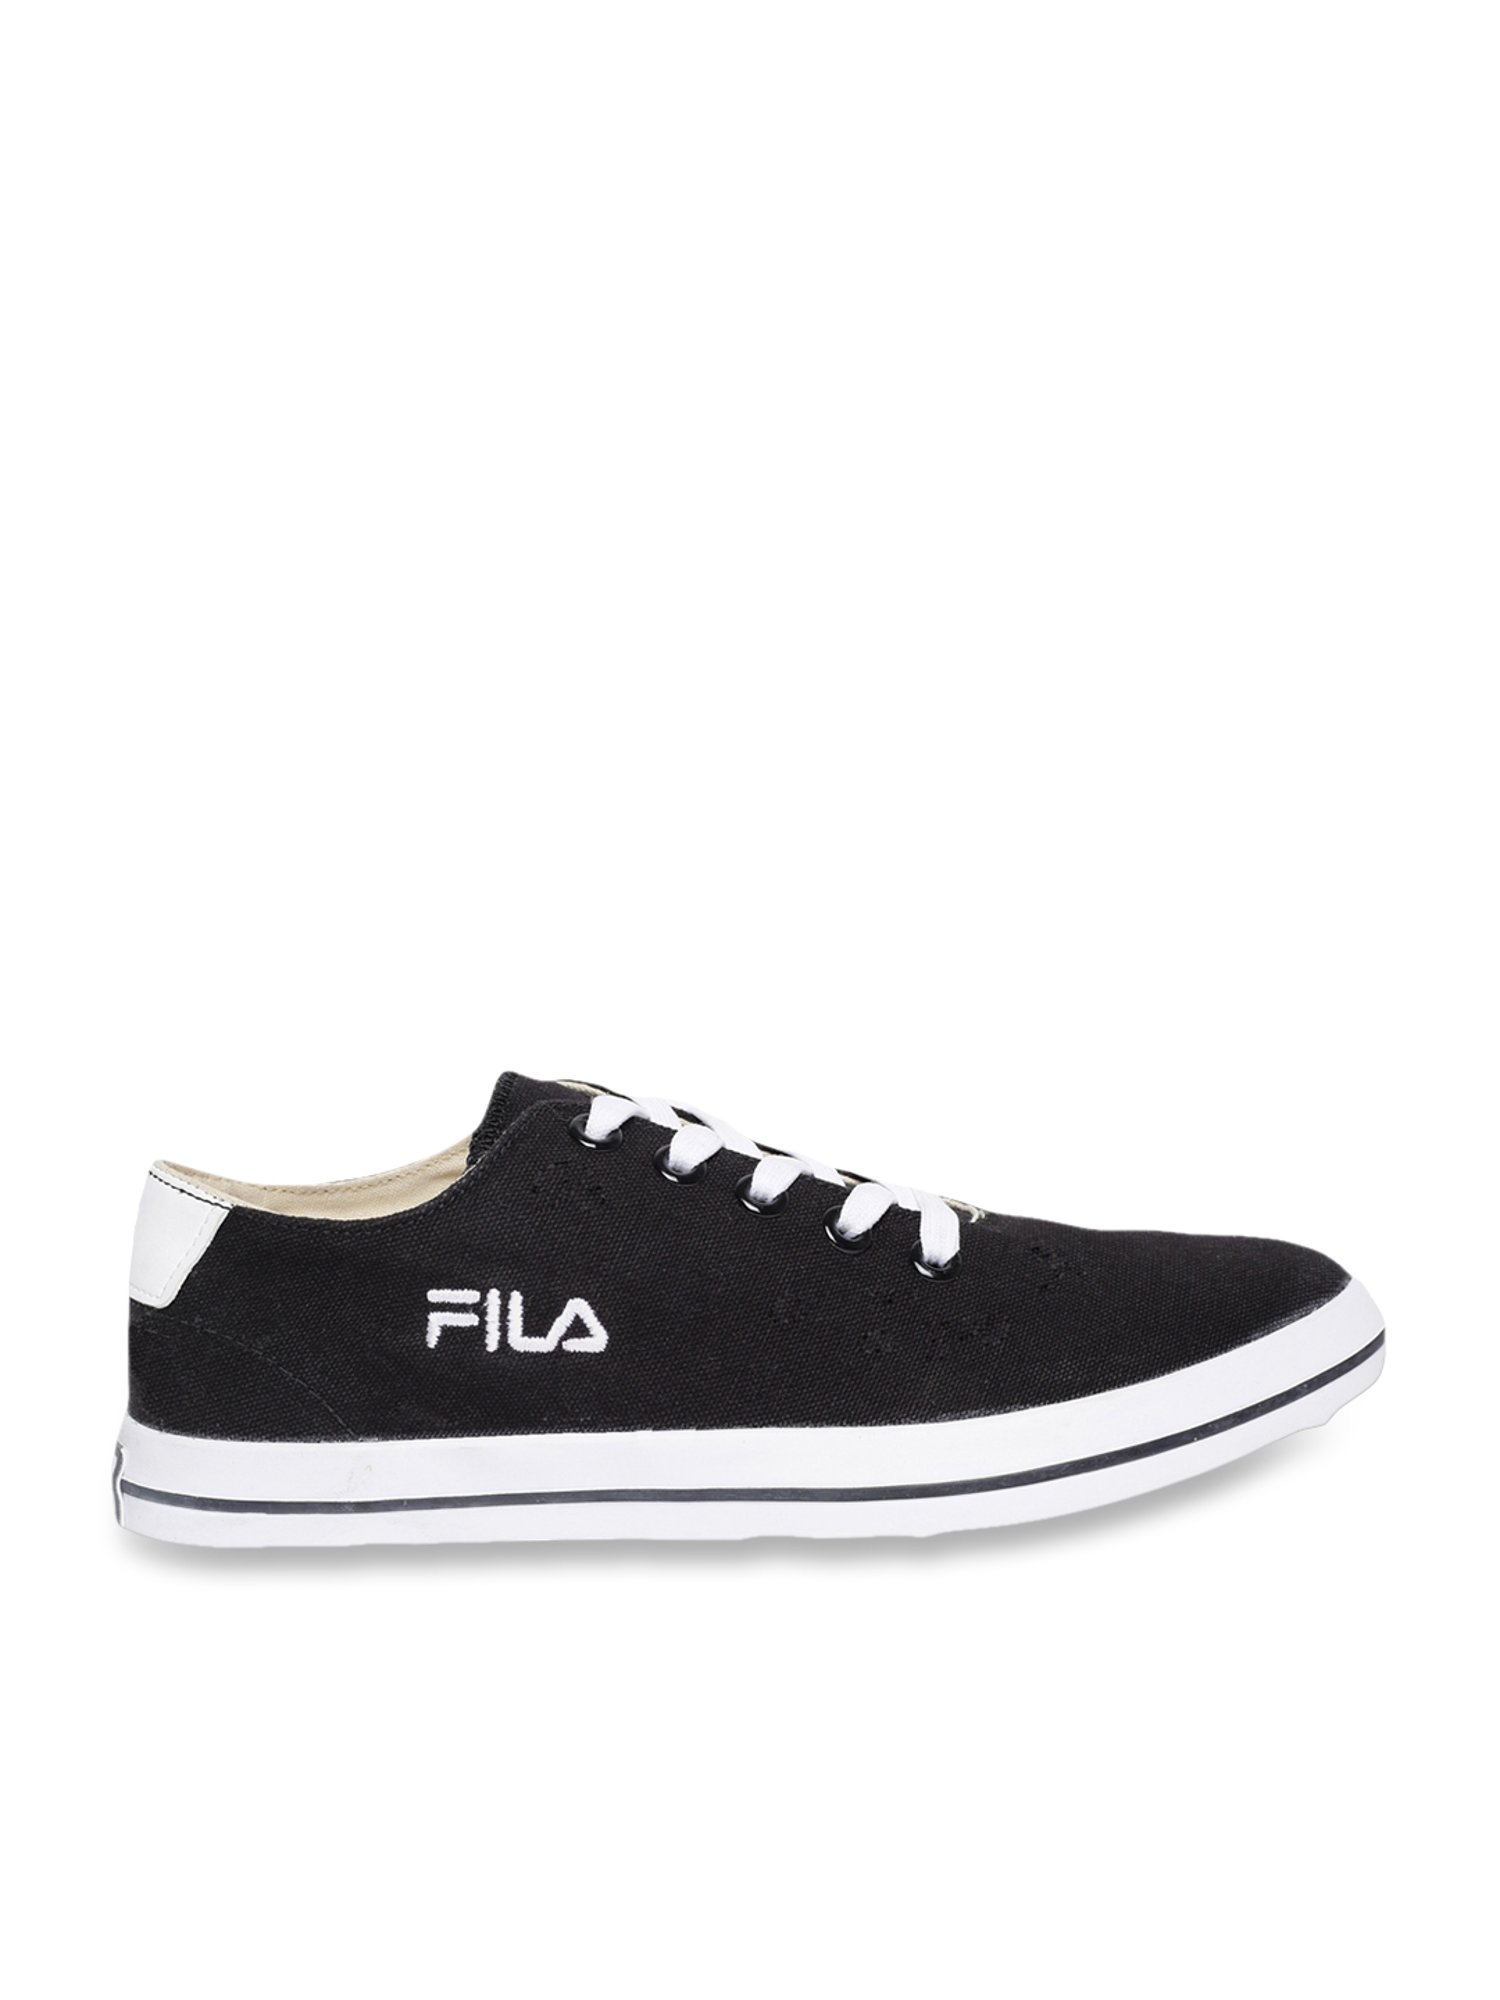 Buy Fila Men's GESAR Black Casual Sneakers for at Best Price @ Tata